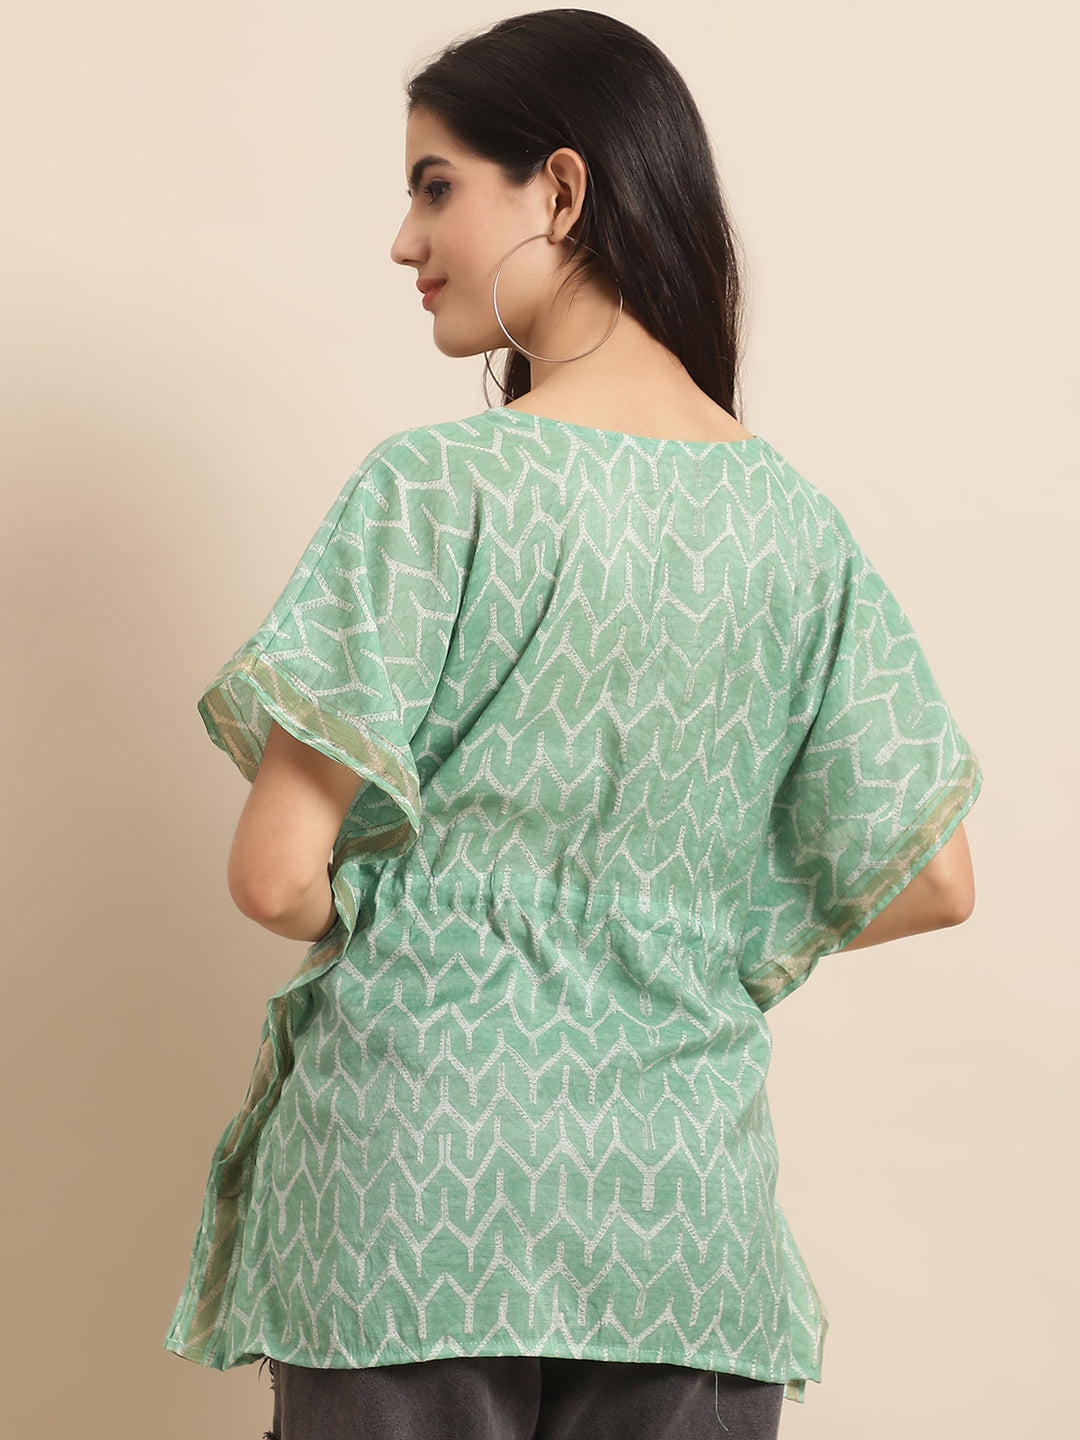 Chanderi Green Geometric Printed Kaftan Top With Bell Sleeve 